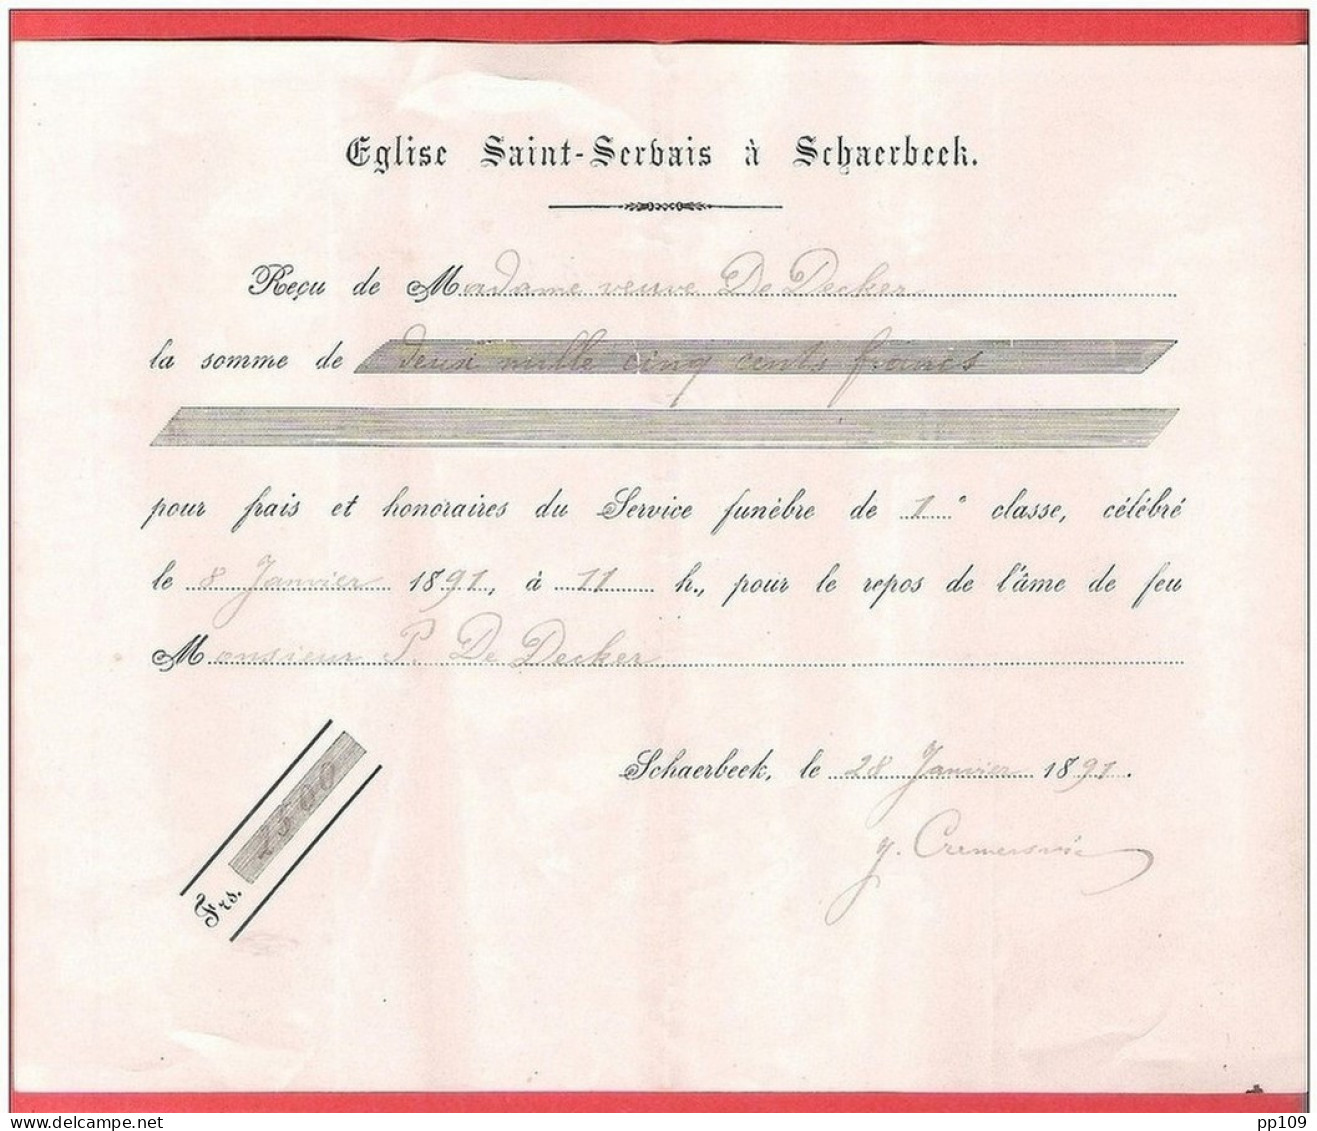 SCHAERBEEK  Eglise SAINT SERVAIS  Reçu Pour Frais De Service Funèbre  1891 - Documents